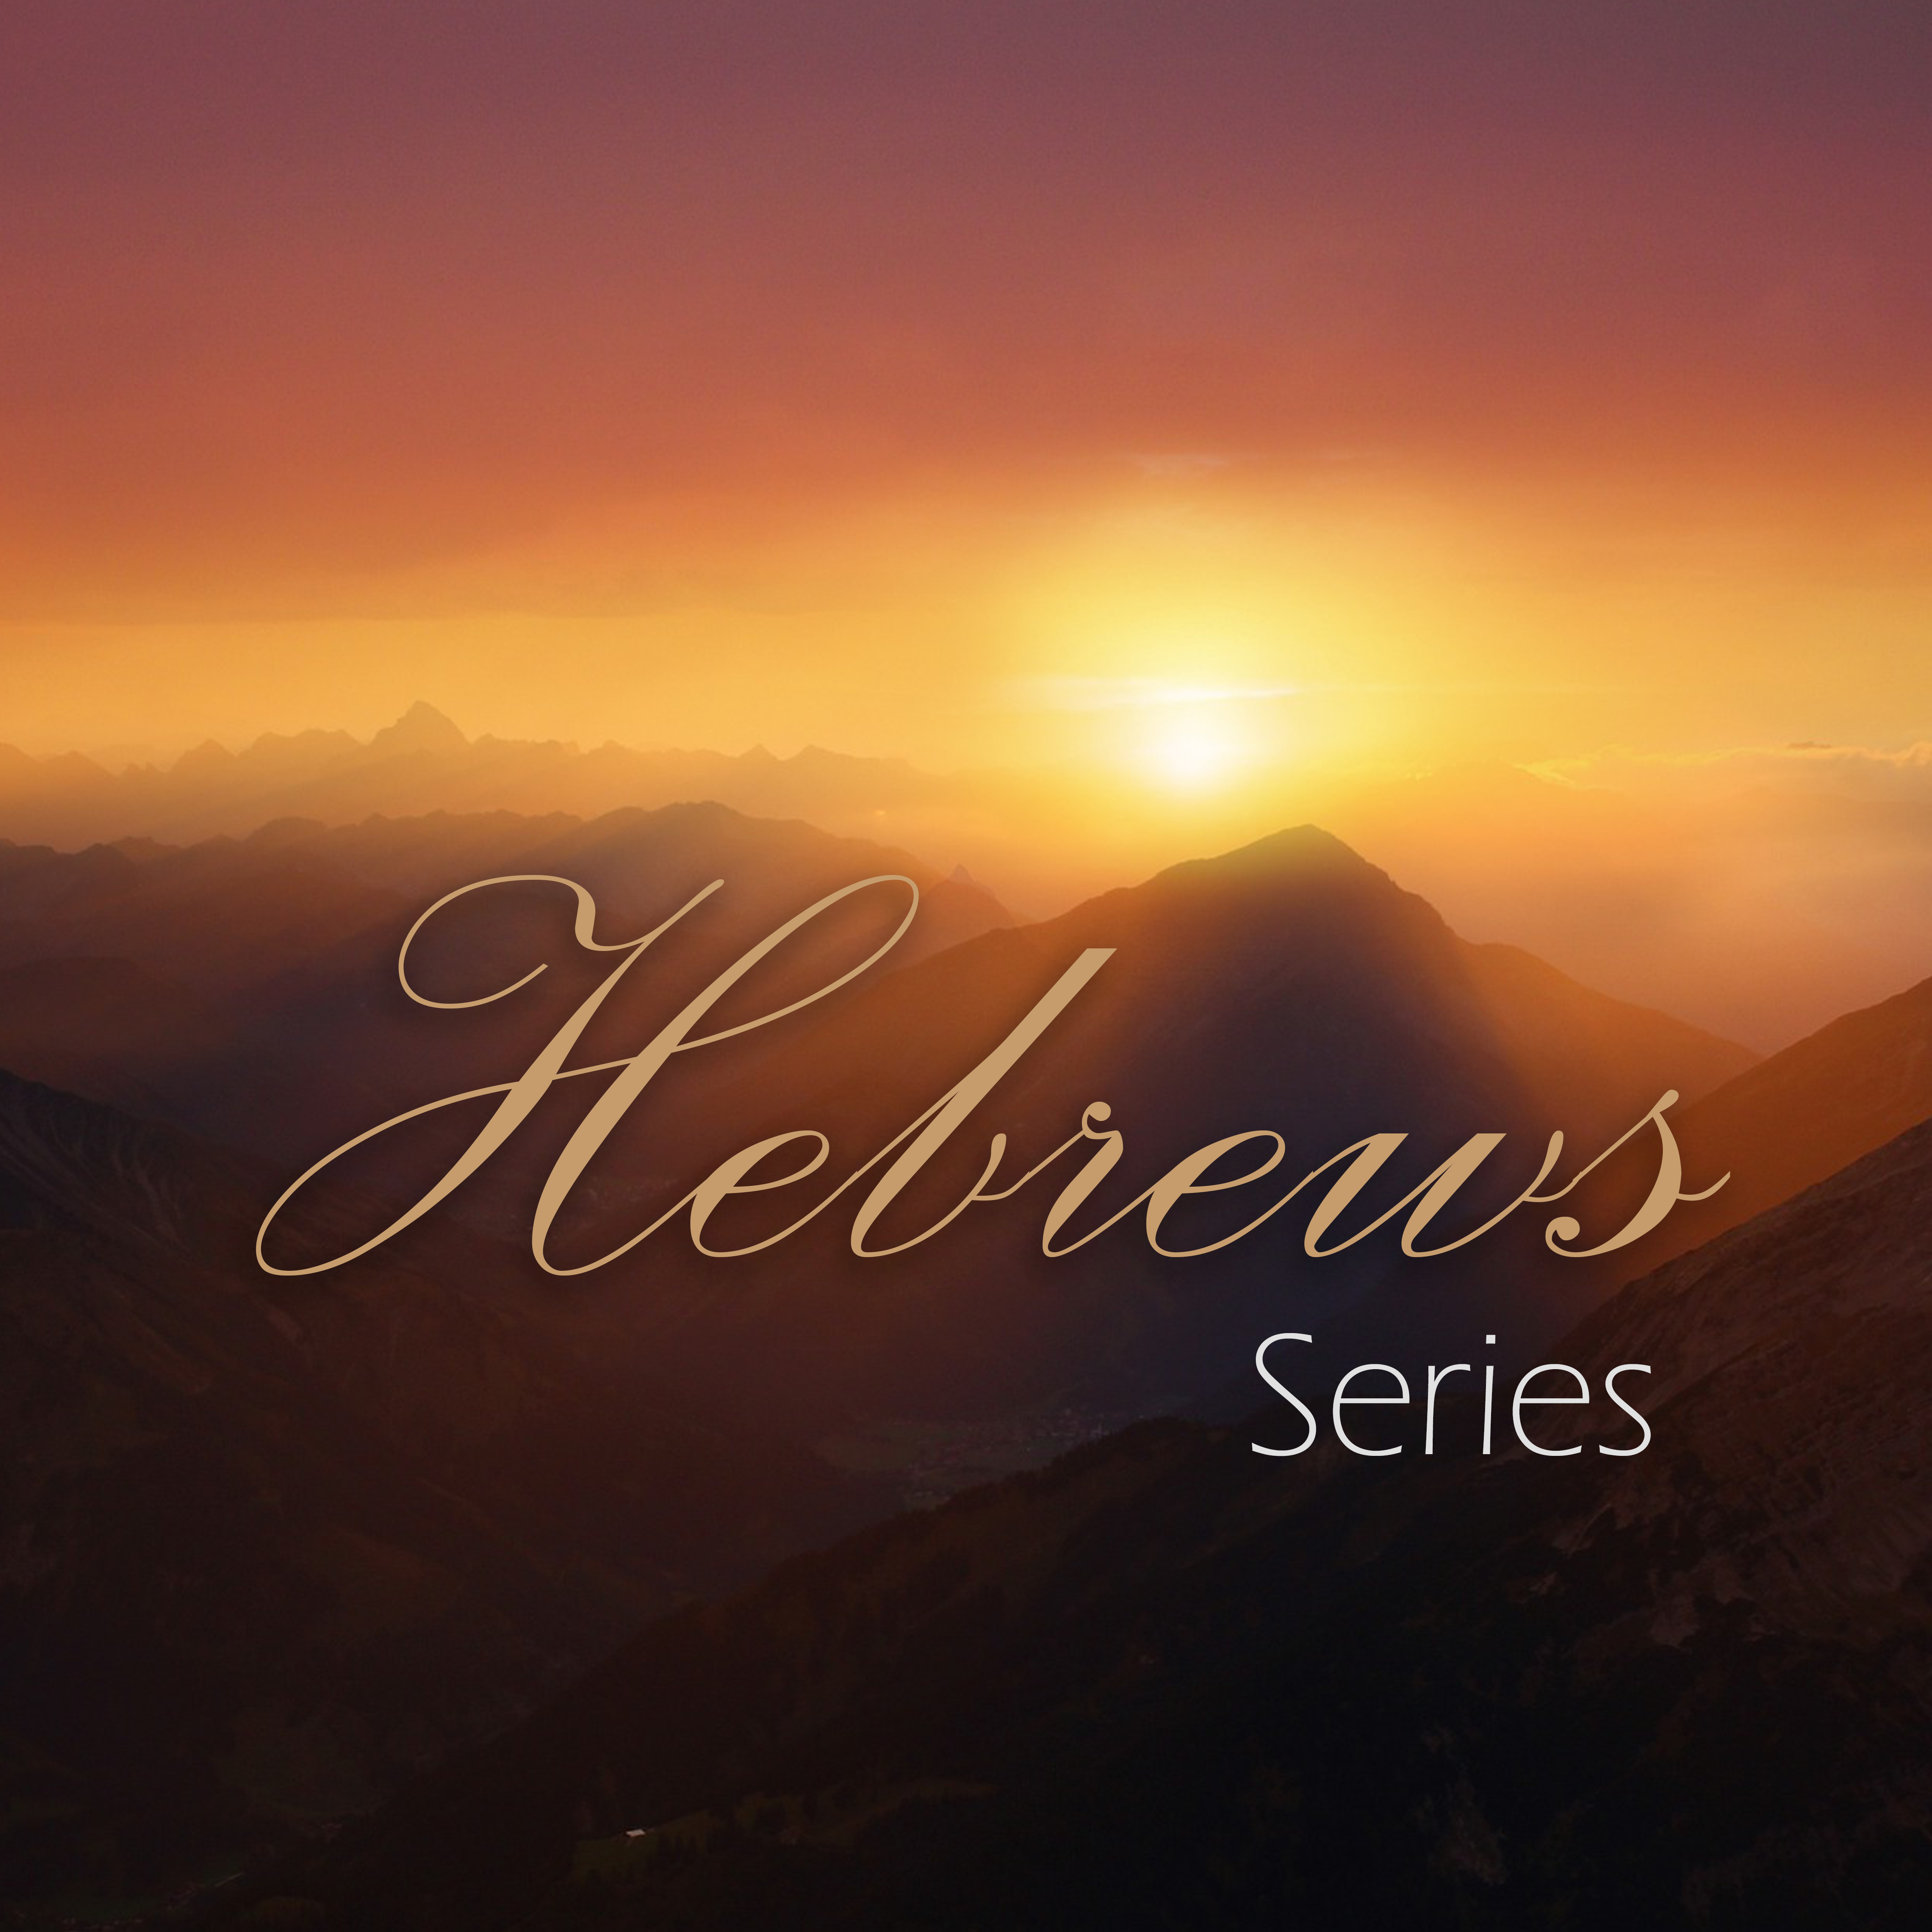 Hebrews 11 Series